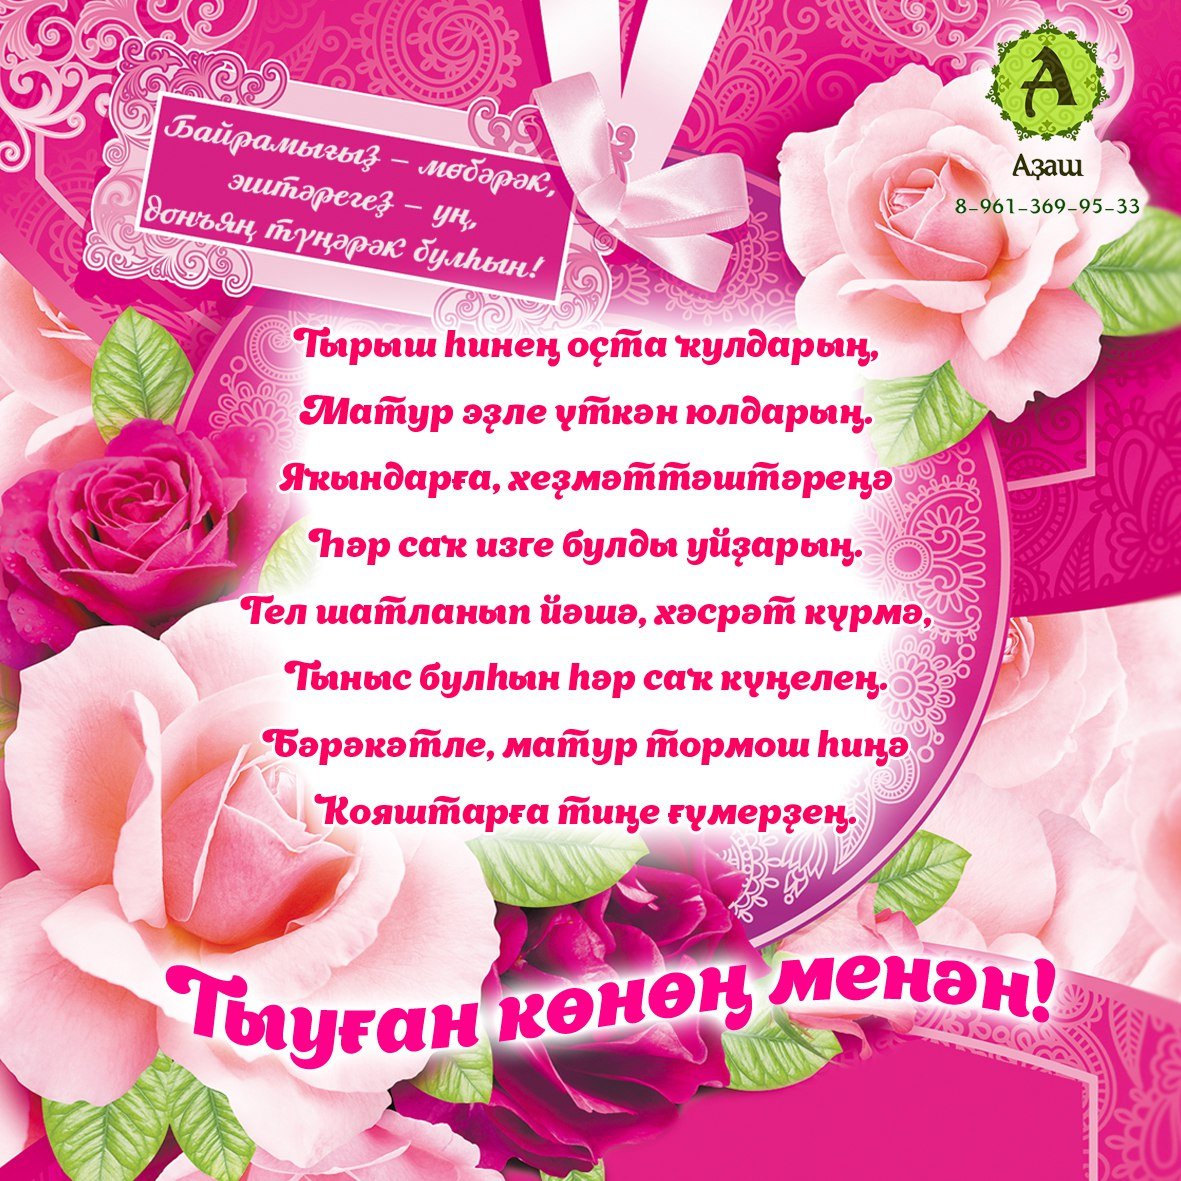 Поздравление на татарском языке подруге. Поздравления с днём рождения на башкирском. Поздравление с юбилеем на башкирском. Поздравления с днём рождения на башкирском языке. Поздравления с днём рождения маме на башкирском языке.